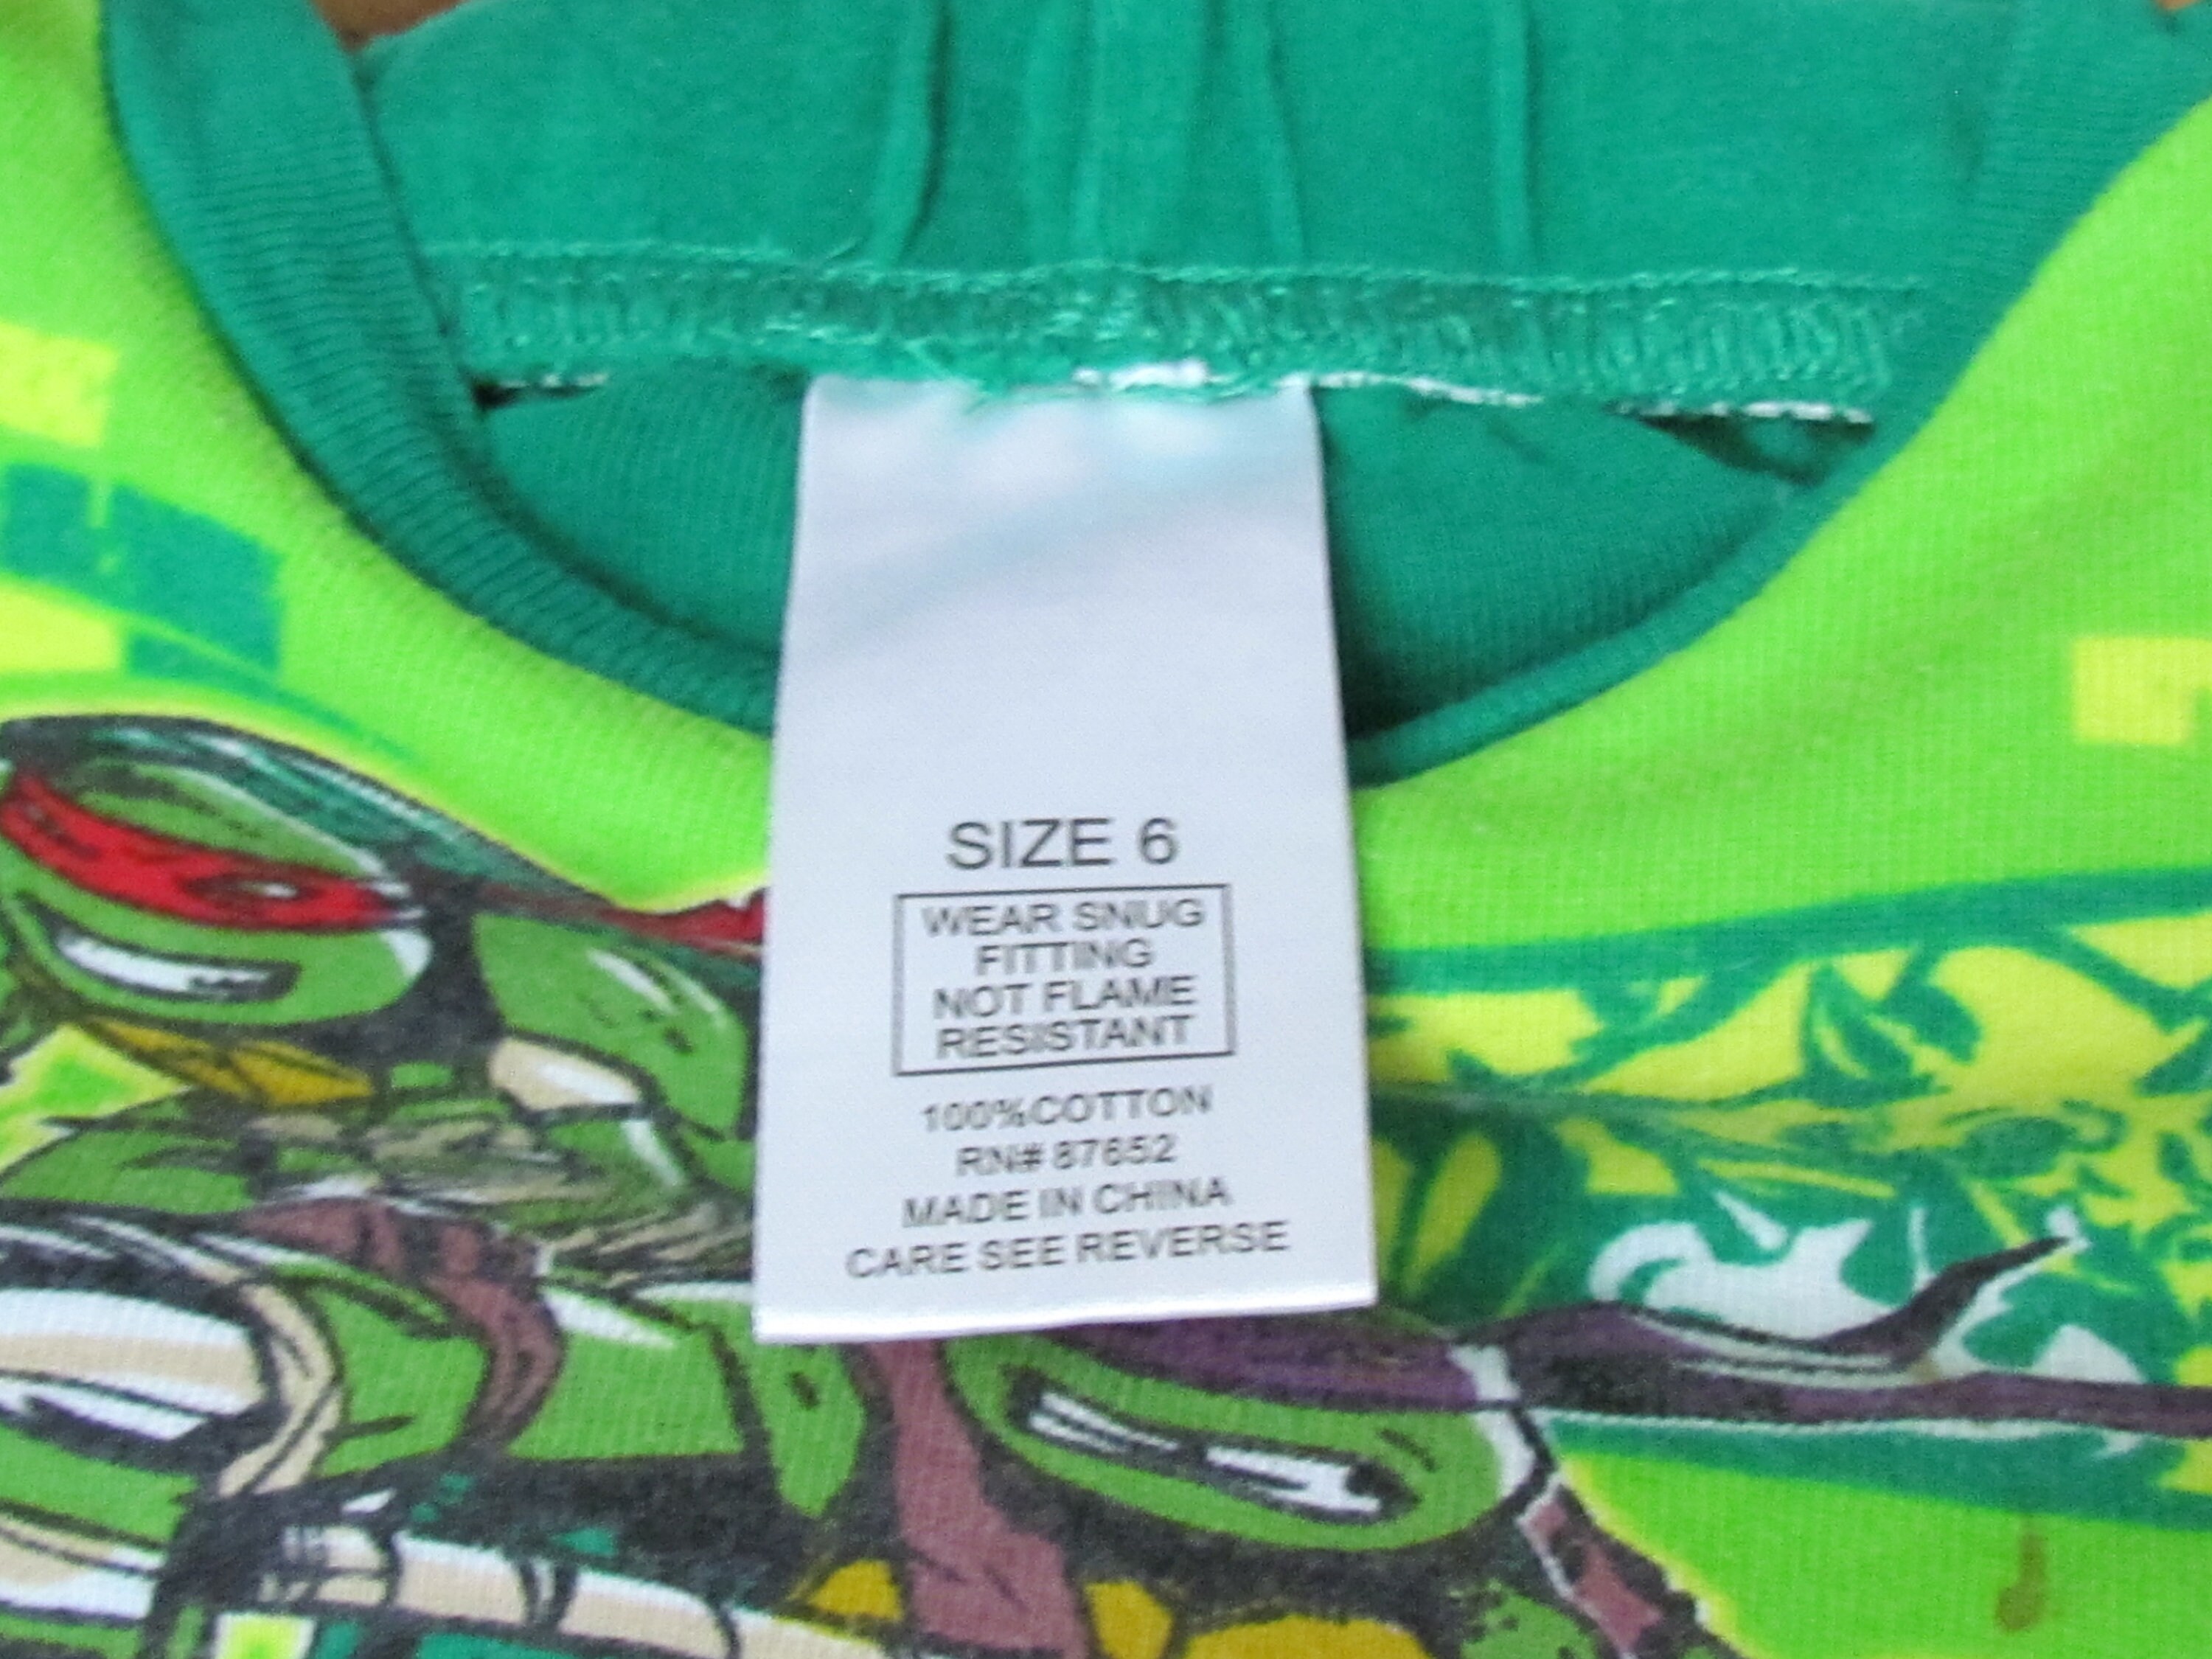 Nickelodeon Teenage Mutant Ninja Turtles Boys 6 Two-piece Cotton Pjs  Costume Pajamas 